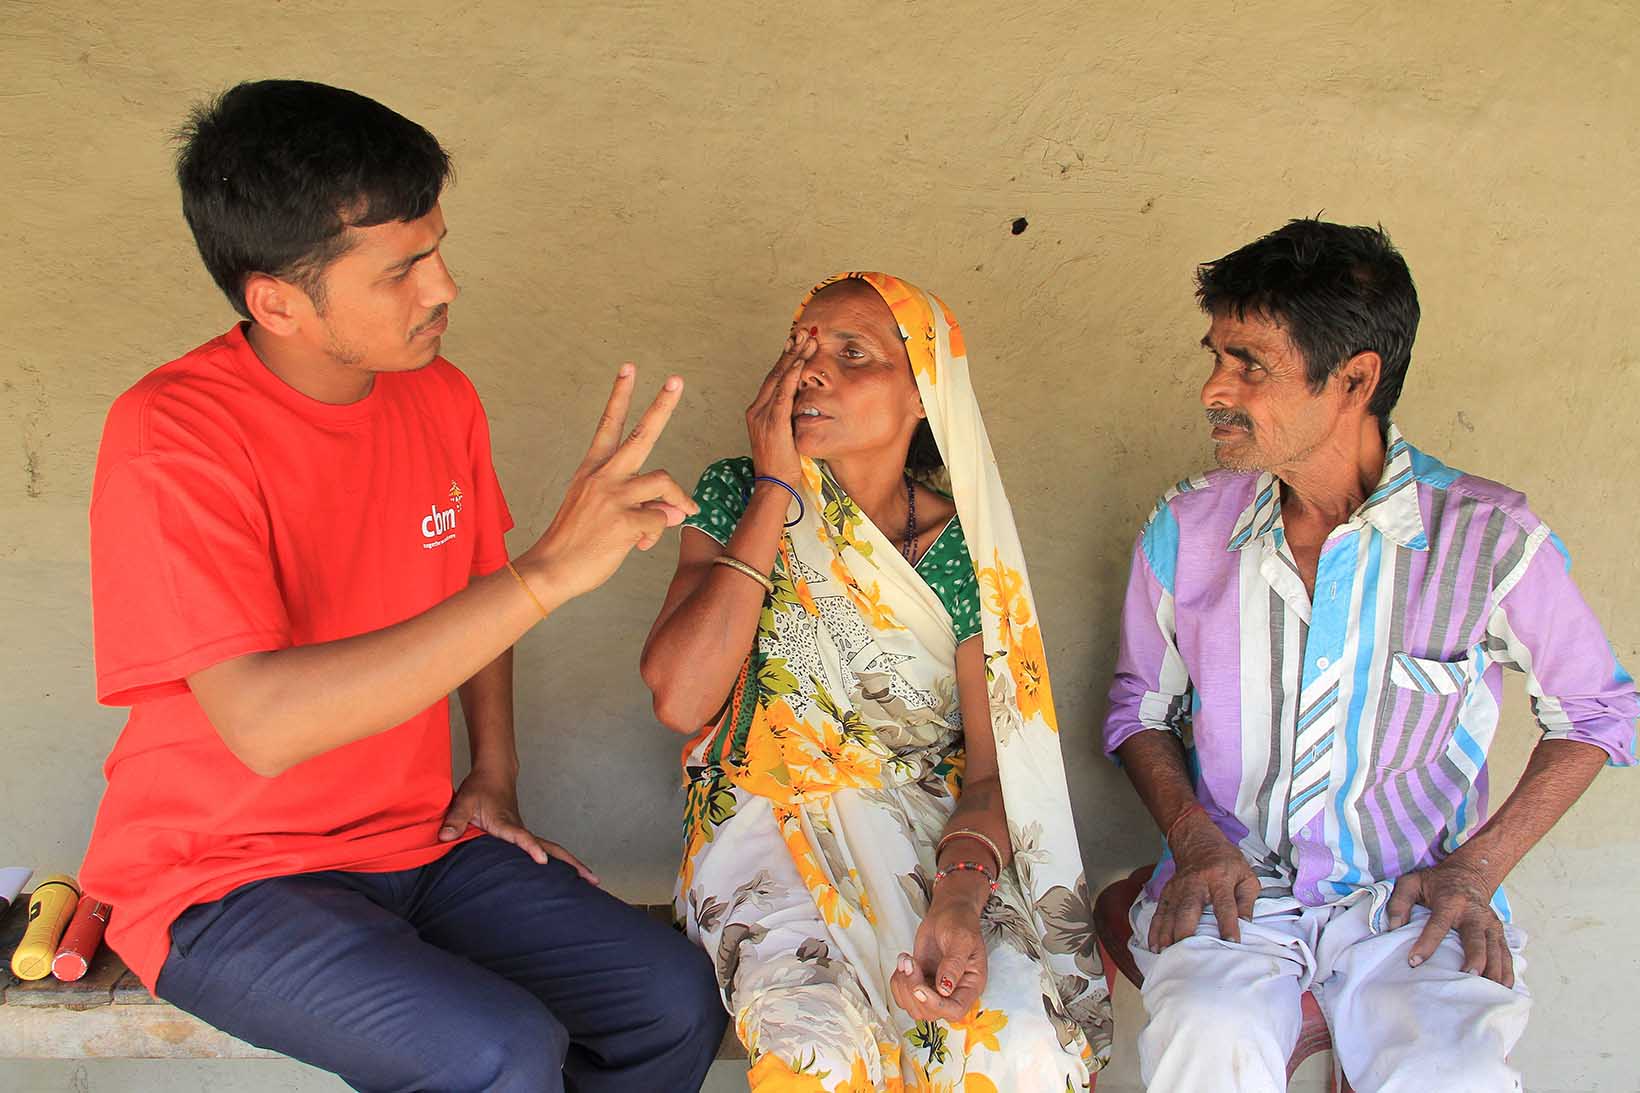 Ein Mann überprüft mit einem Fingerzähltest die Sehkraft einer Frau aus Indien. Die Frau hält mit ihrer rechten Hand ihr rechtes Auge zu, ihr Mann sitzt neben ihr.